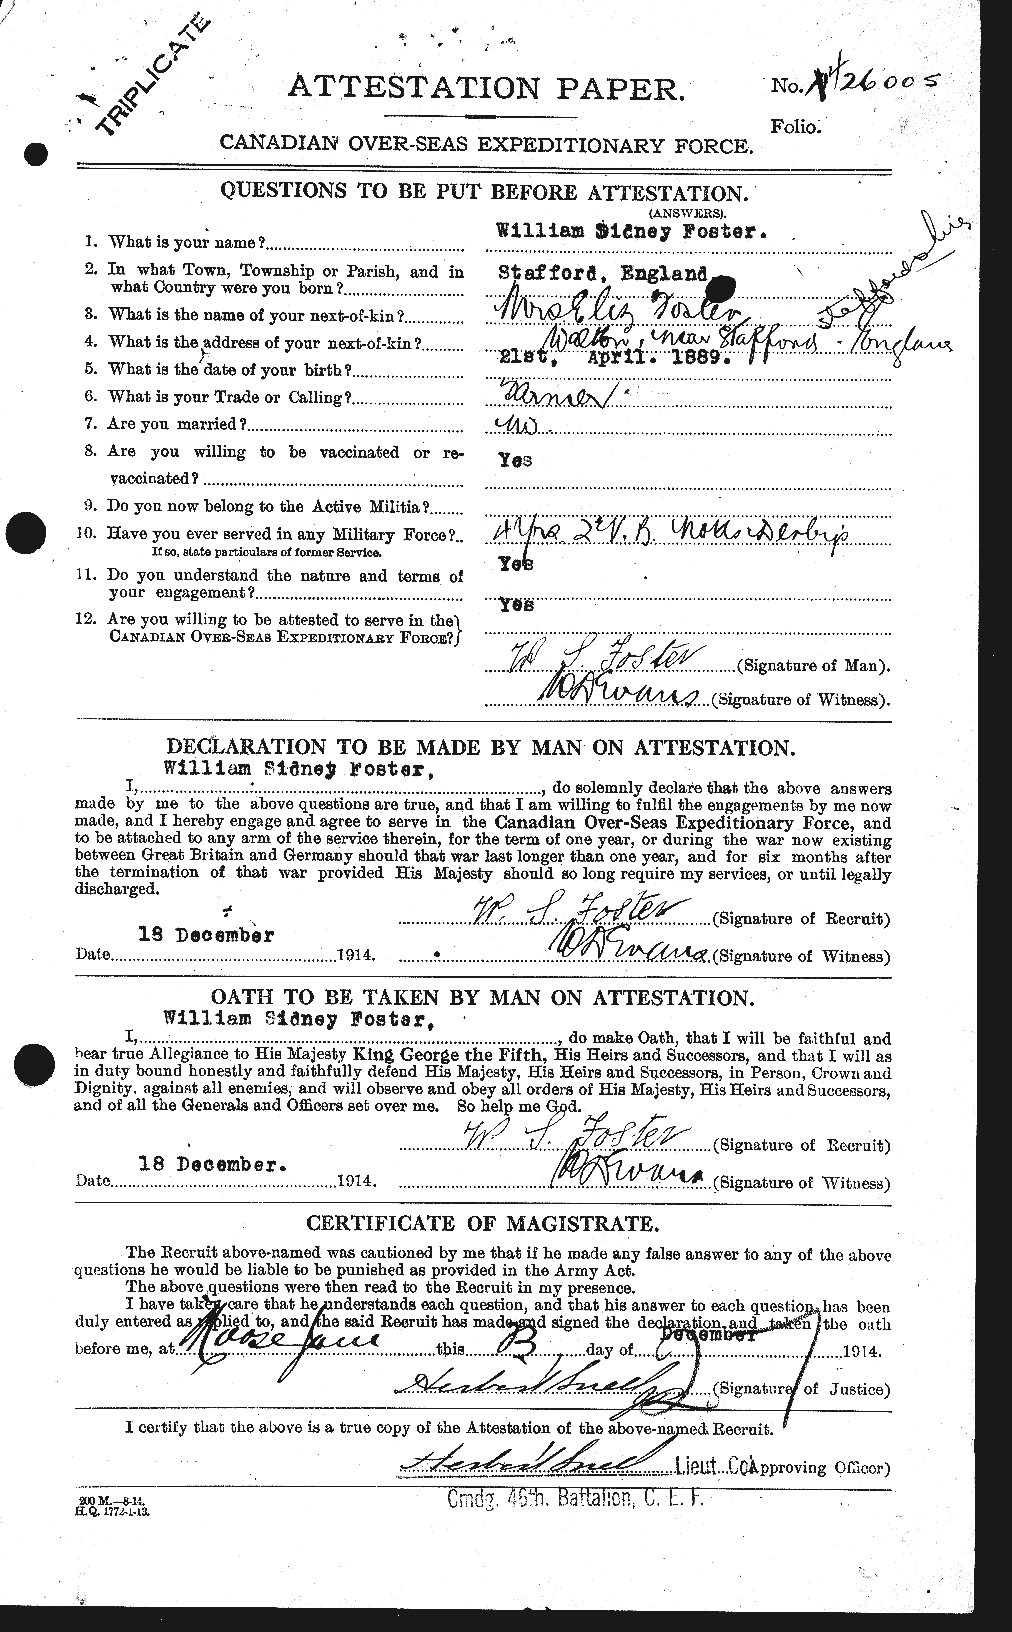 Dossiers du Personnel de la Première Guerre mondiale - CEC 328772a